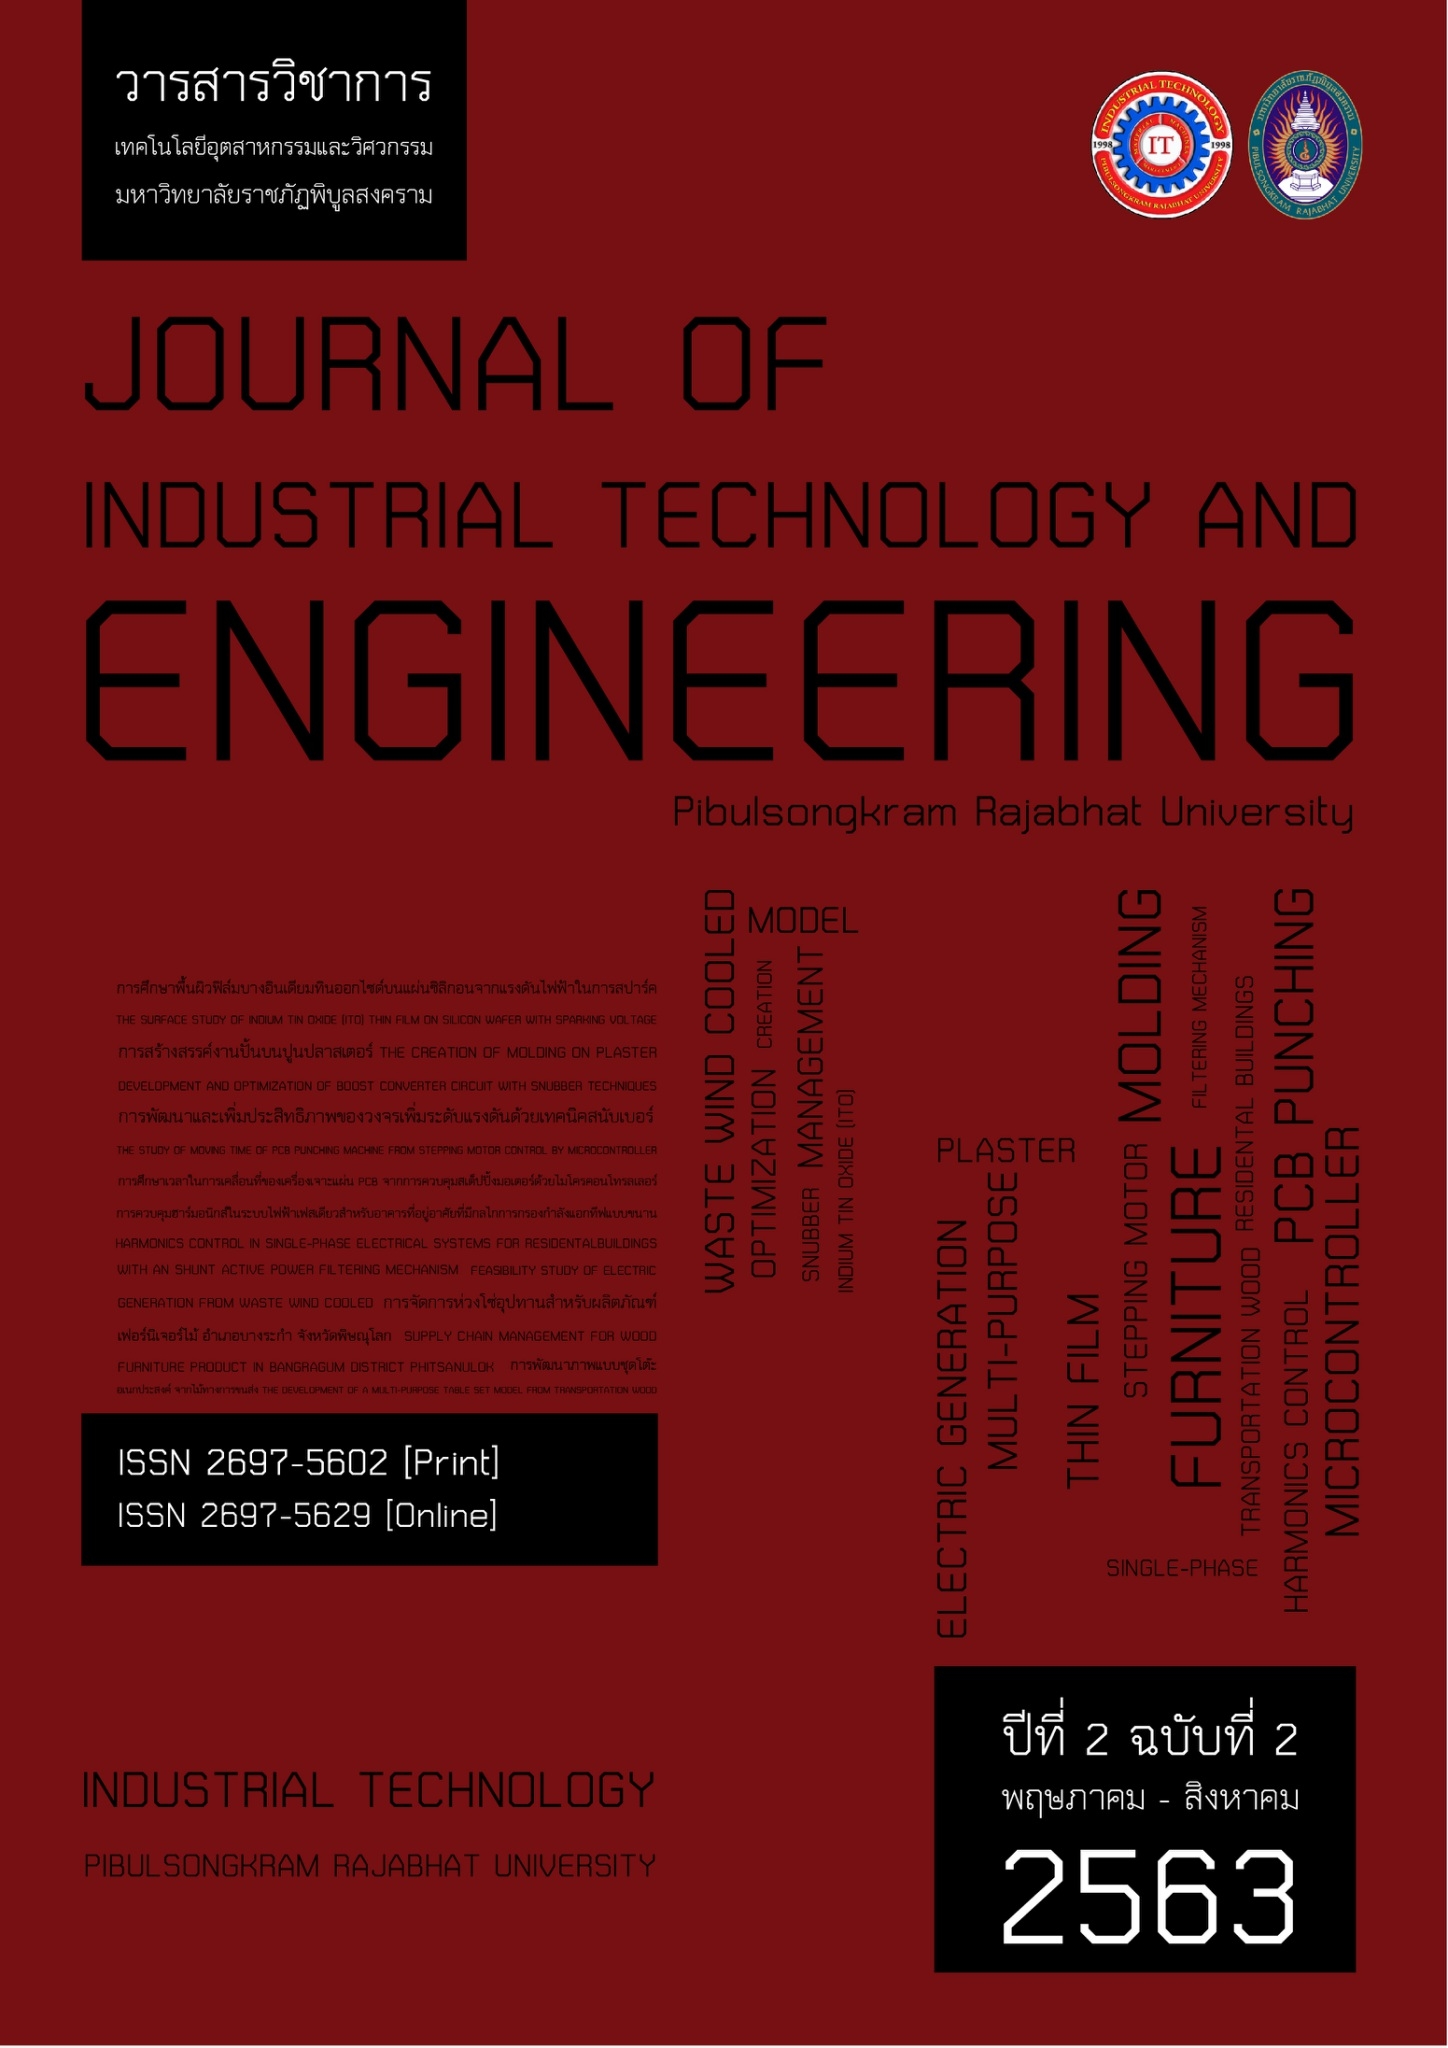 					ดู ปีที่ 2 ฉบับที่ 2 (2020): May 2020 - August 2020 (PSRU Journal of Industrial Technology and Engineering)
				